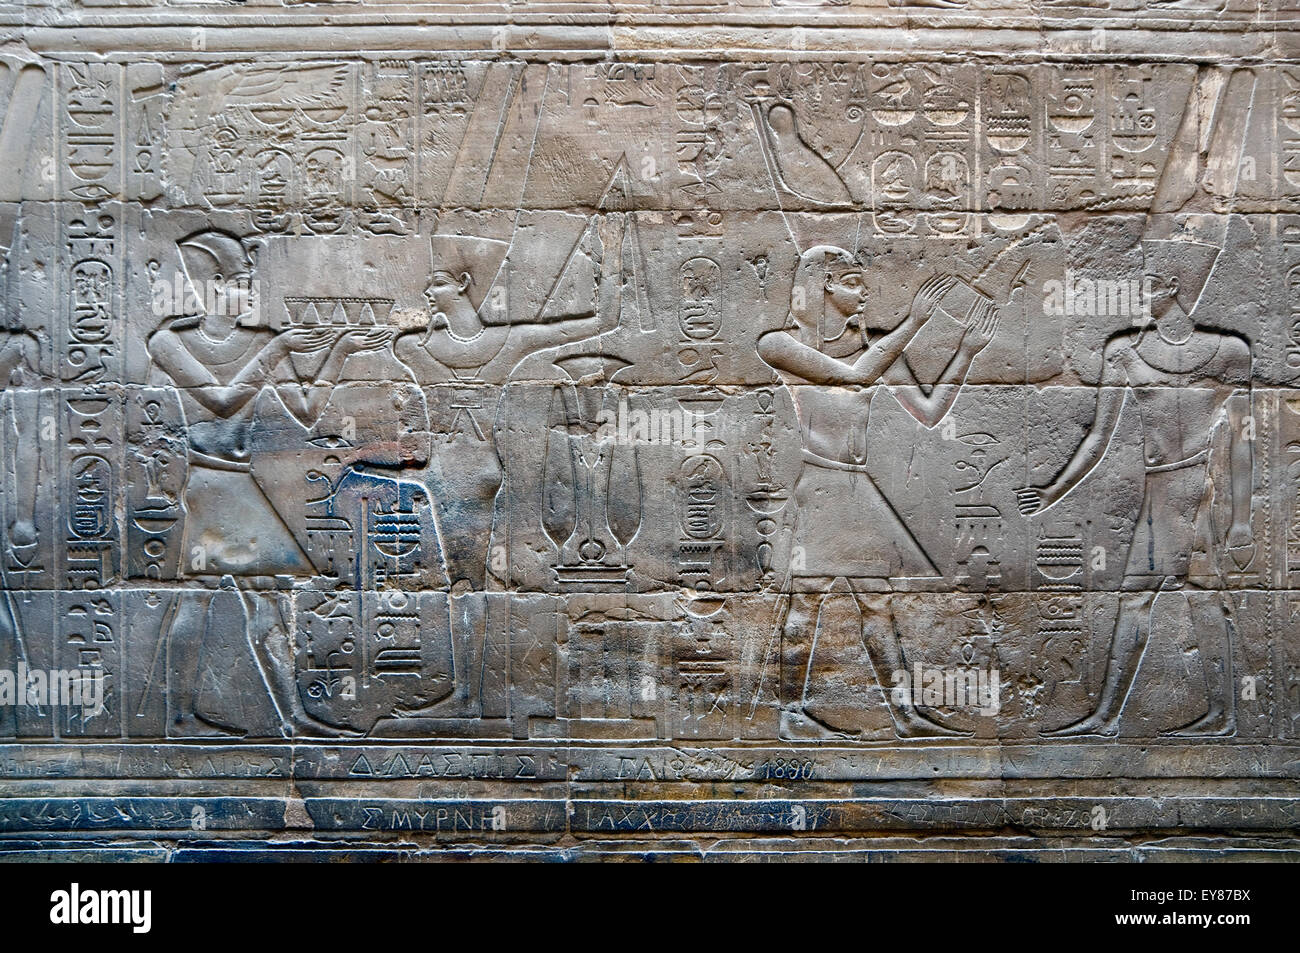 Luxor, Egitto. Tempio di Luxor: il faraone incensa dèi Min e Amon Ra Foto Stock